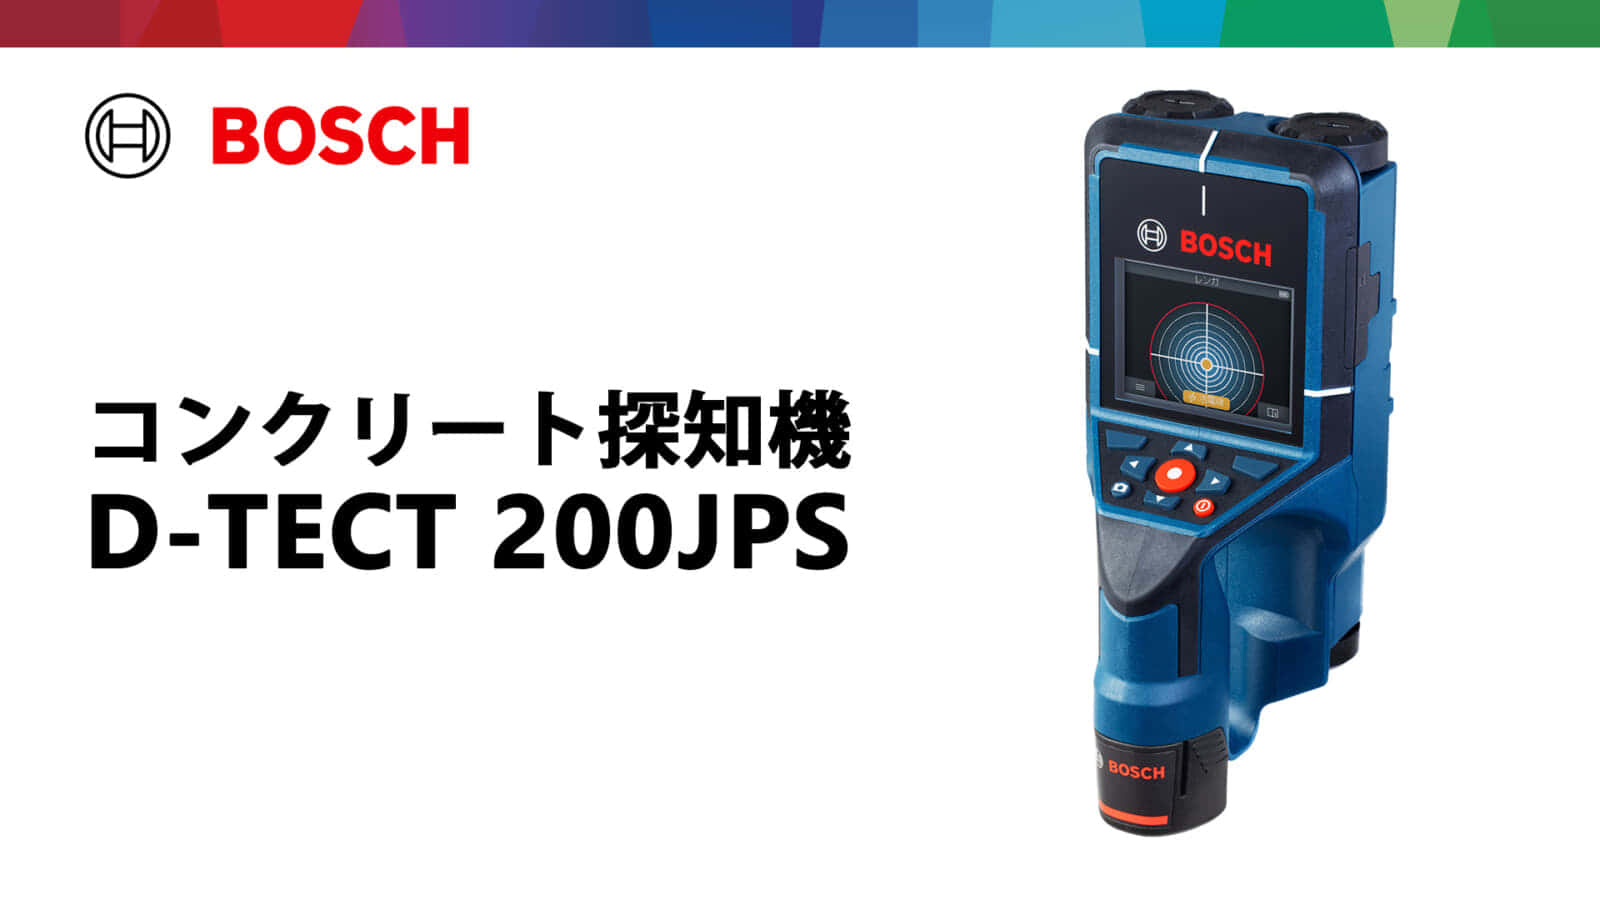 ボッシュD-TECT 200JPS コンクリート探知機を発売、カラーディスプレイで見やすさ向上